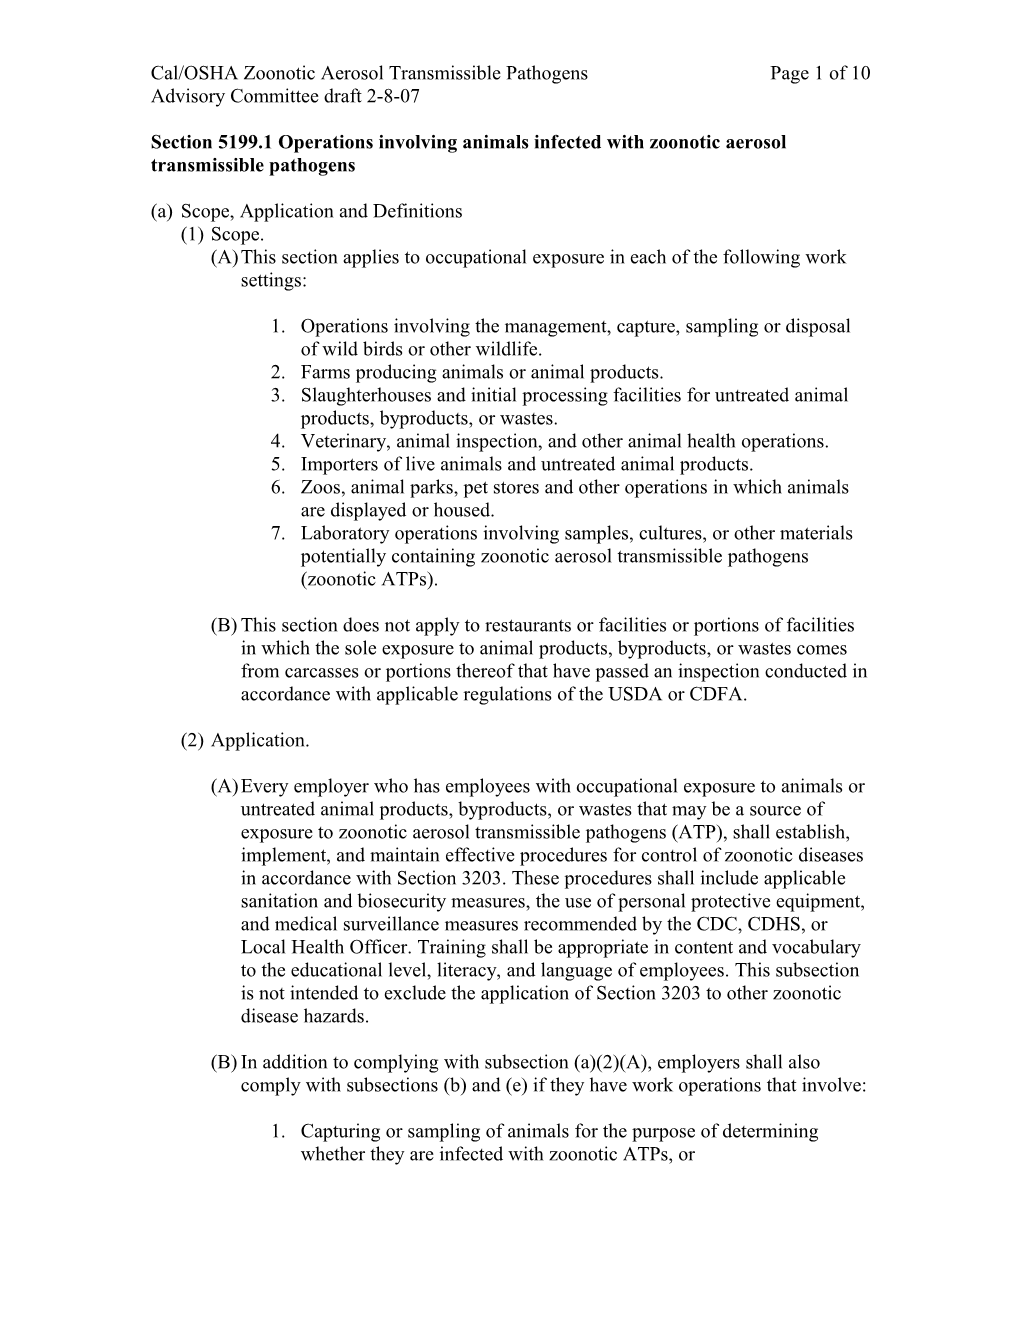 Cal/OSHA Zoonotic Aerosol Transmissible Pathogens Page 7 of 10